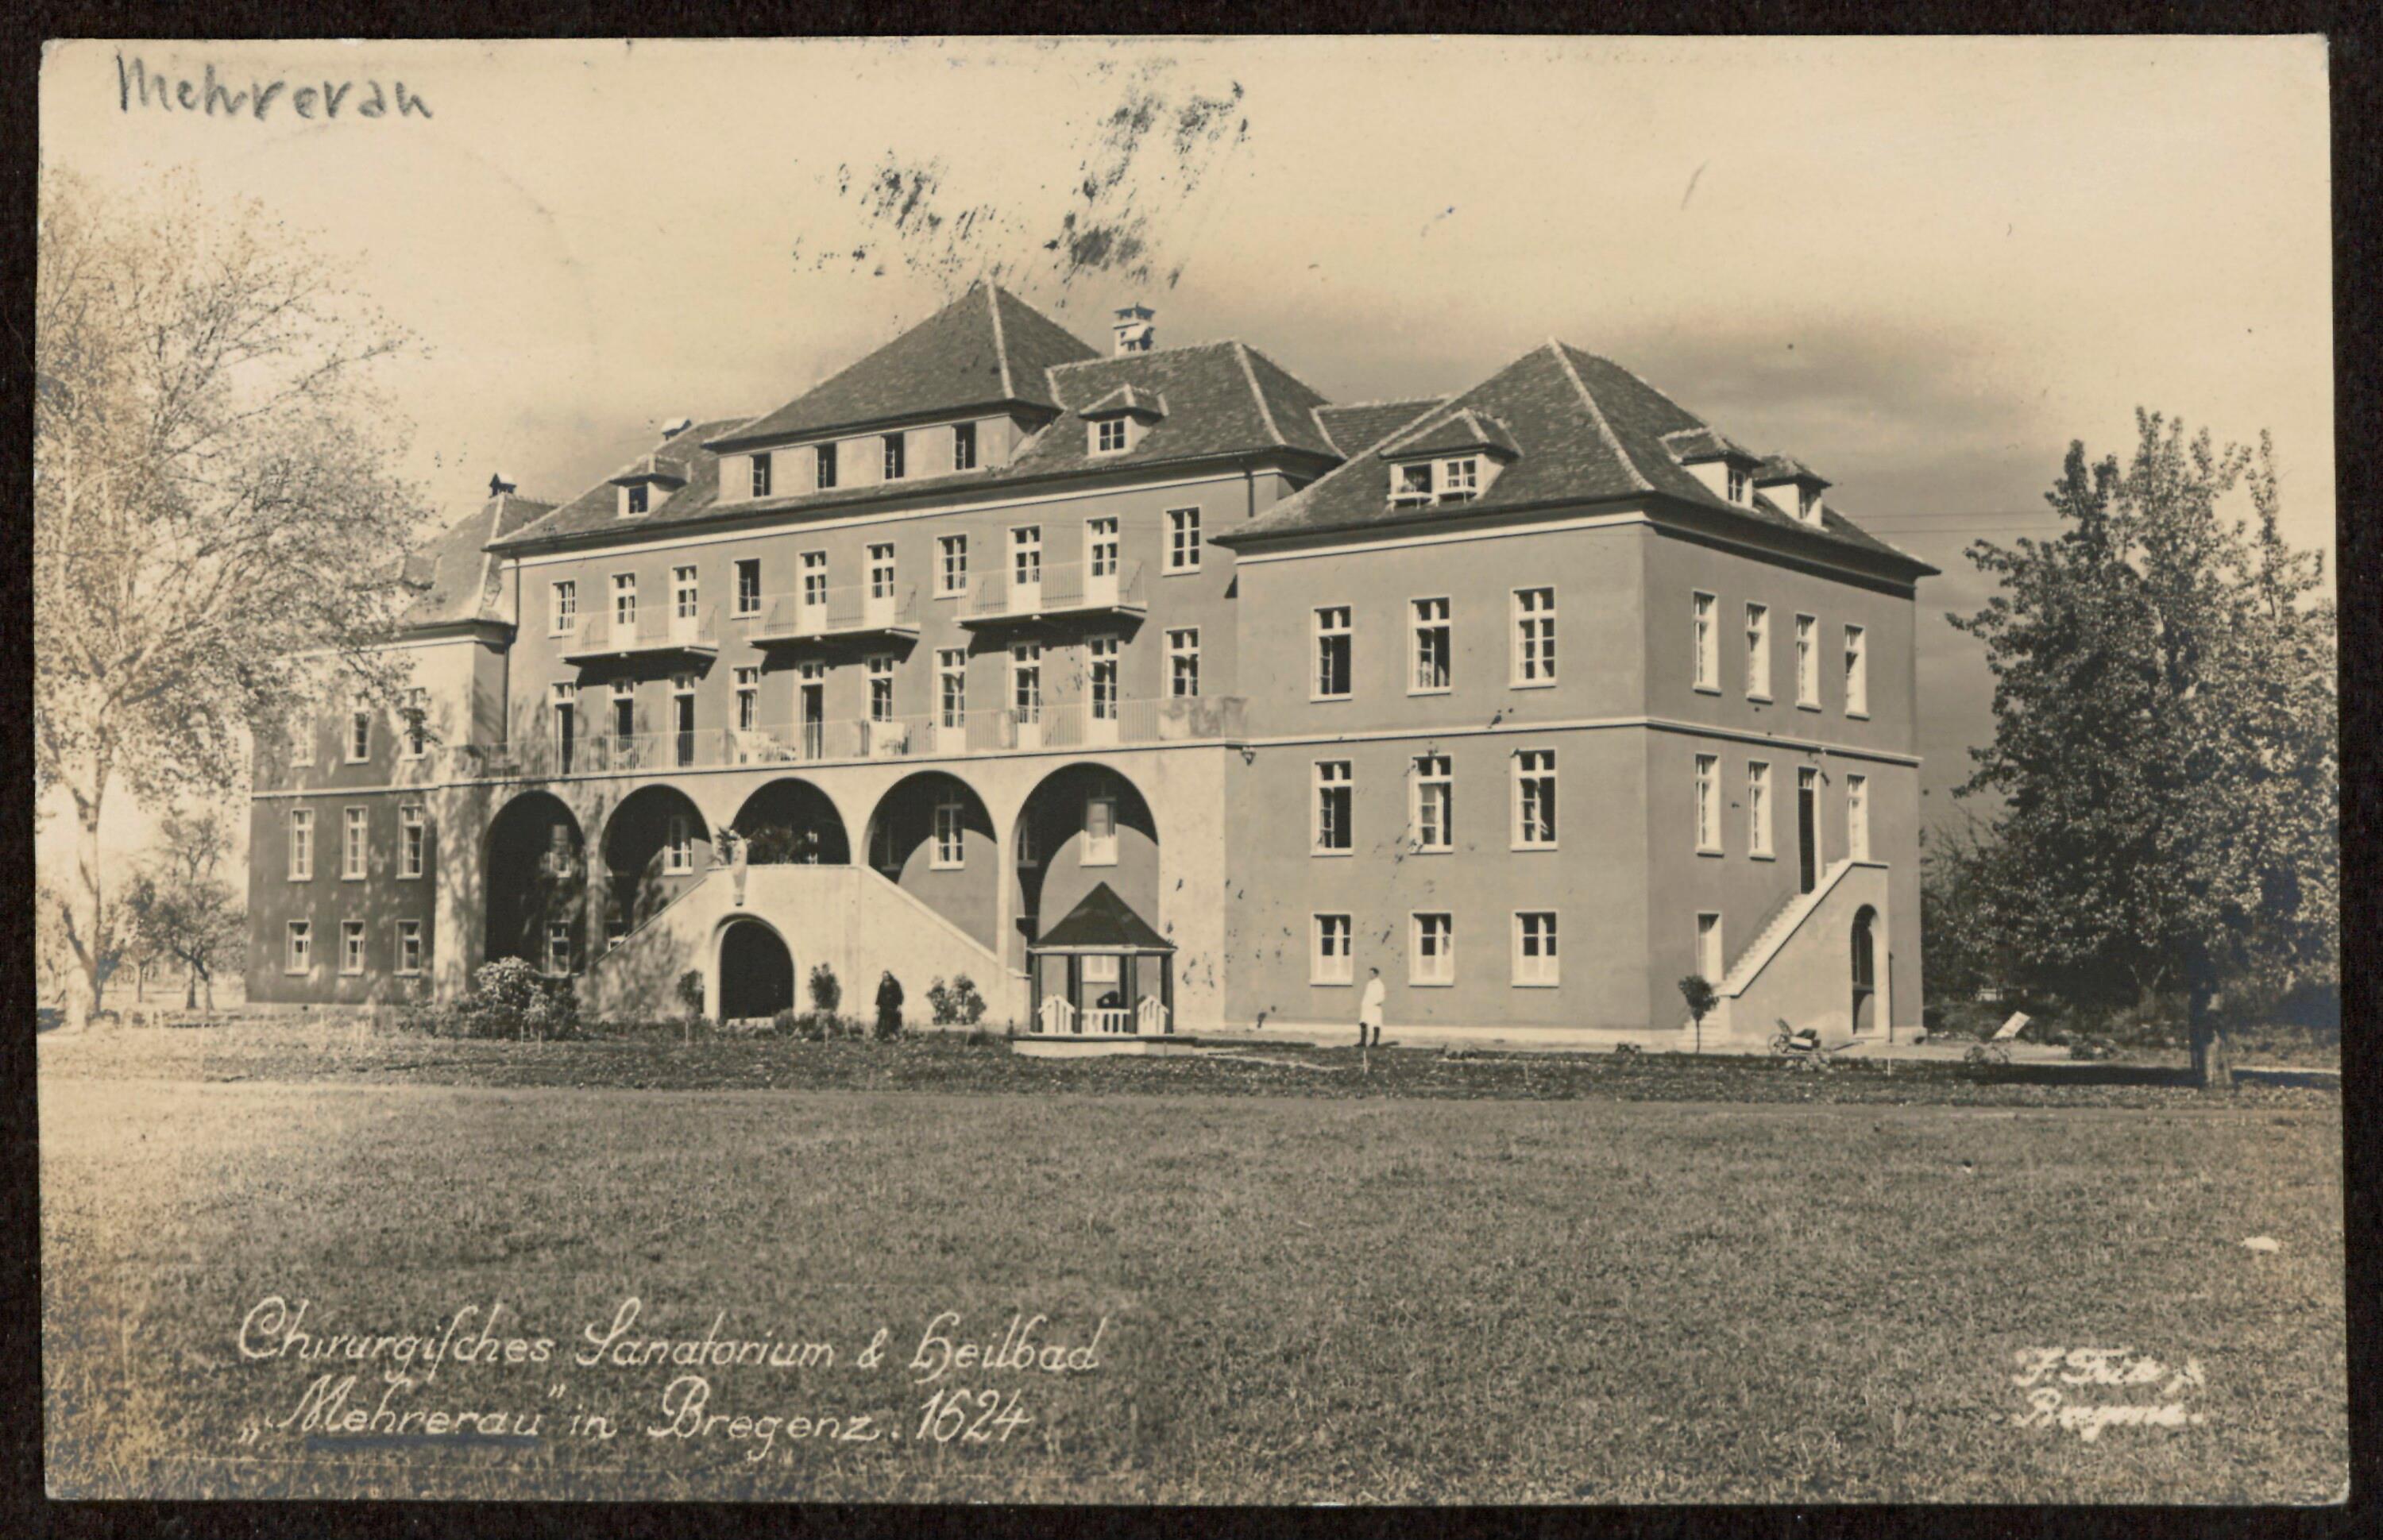 Chirurgisches Sanatorium & Heilbad></div>


    <hr>
    <div class=